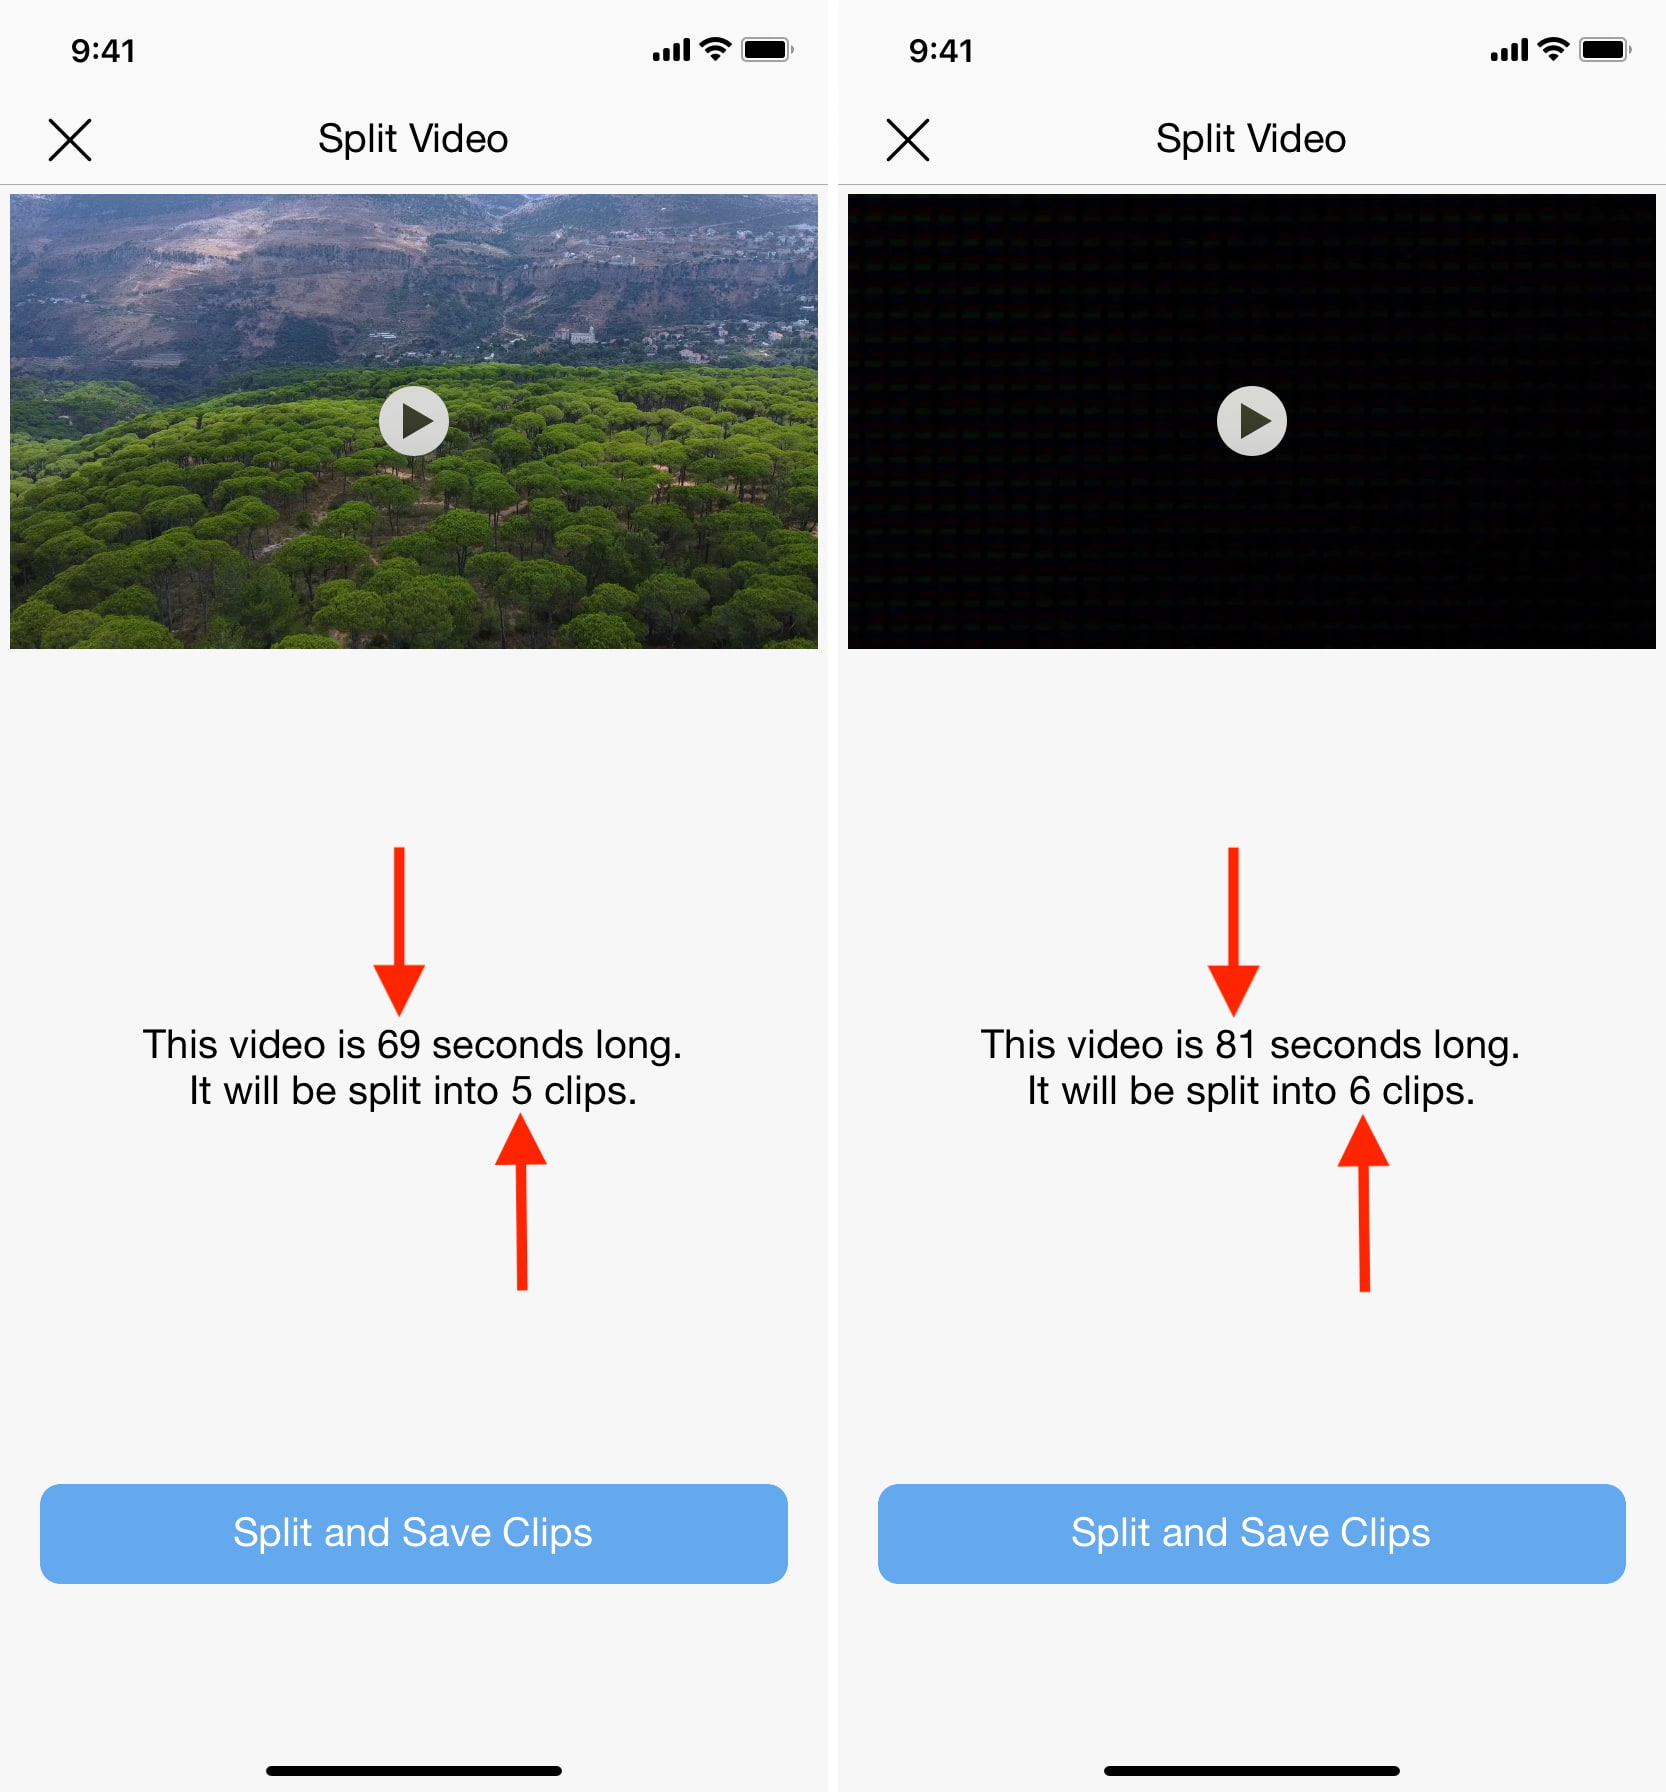 La aplicación Split Video divide correctamente el video en múltiples partes más pequeñas